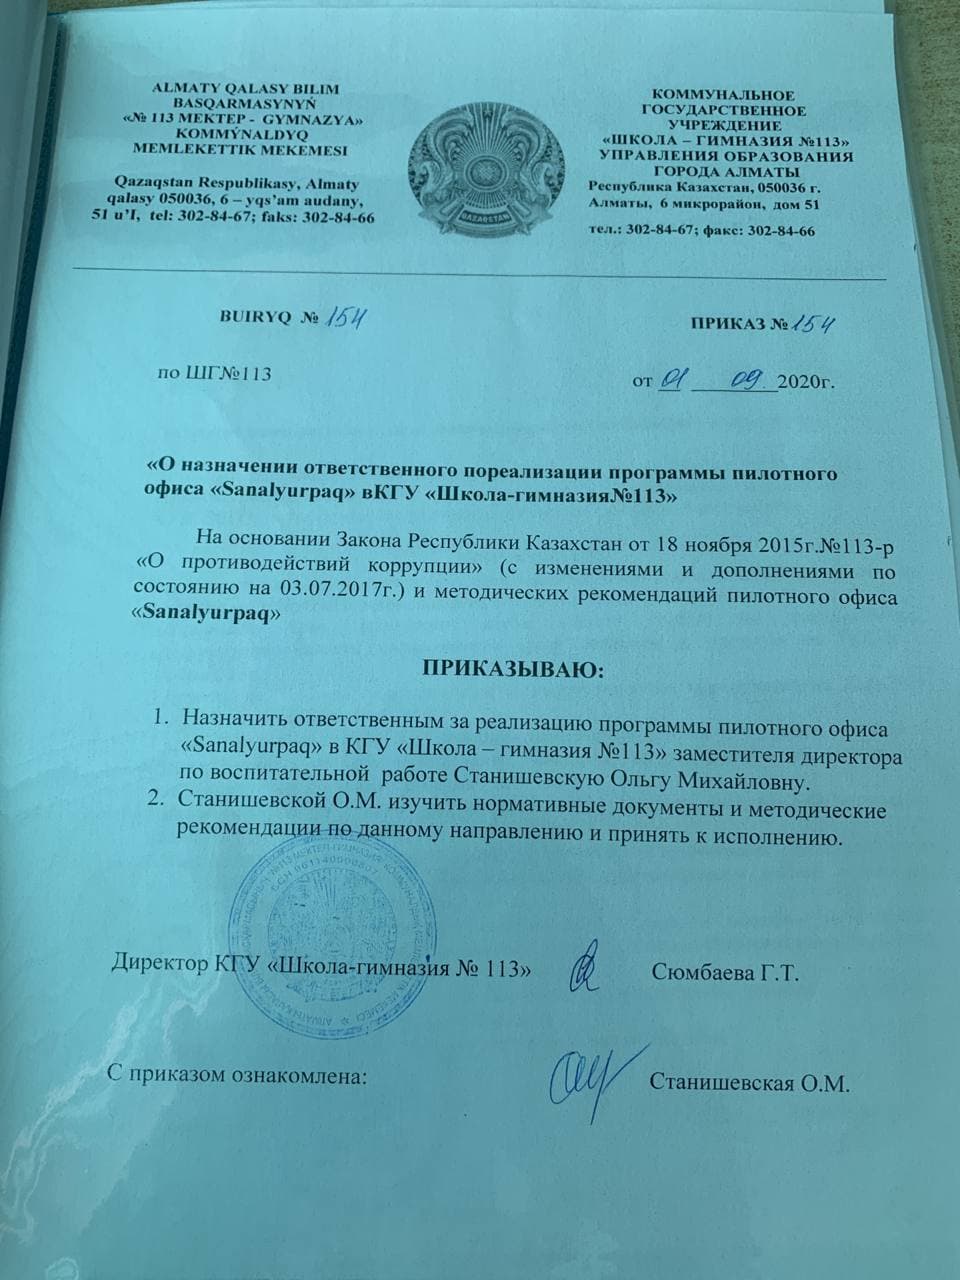 О назначении ответственного пореализации программы пилотного офиса Snalyurpaq в КГУ ШГ №113